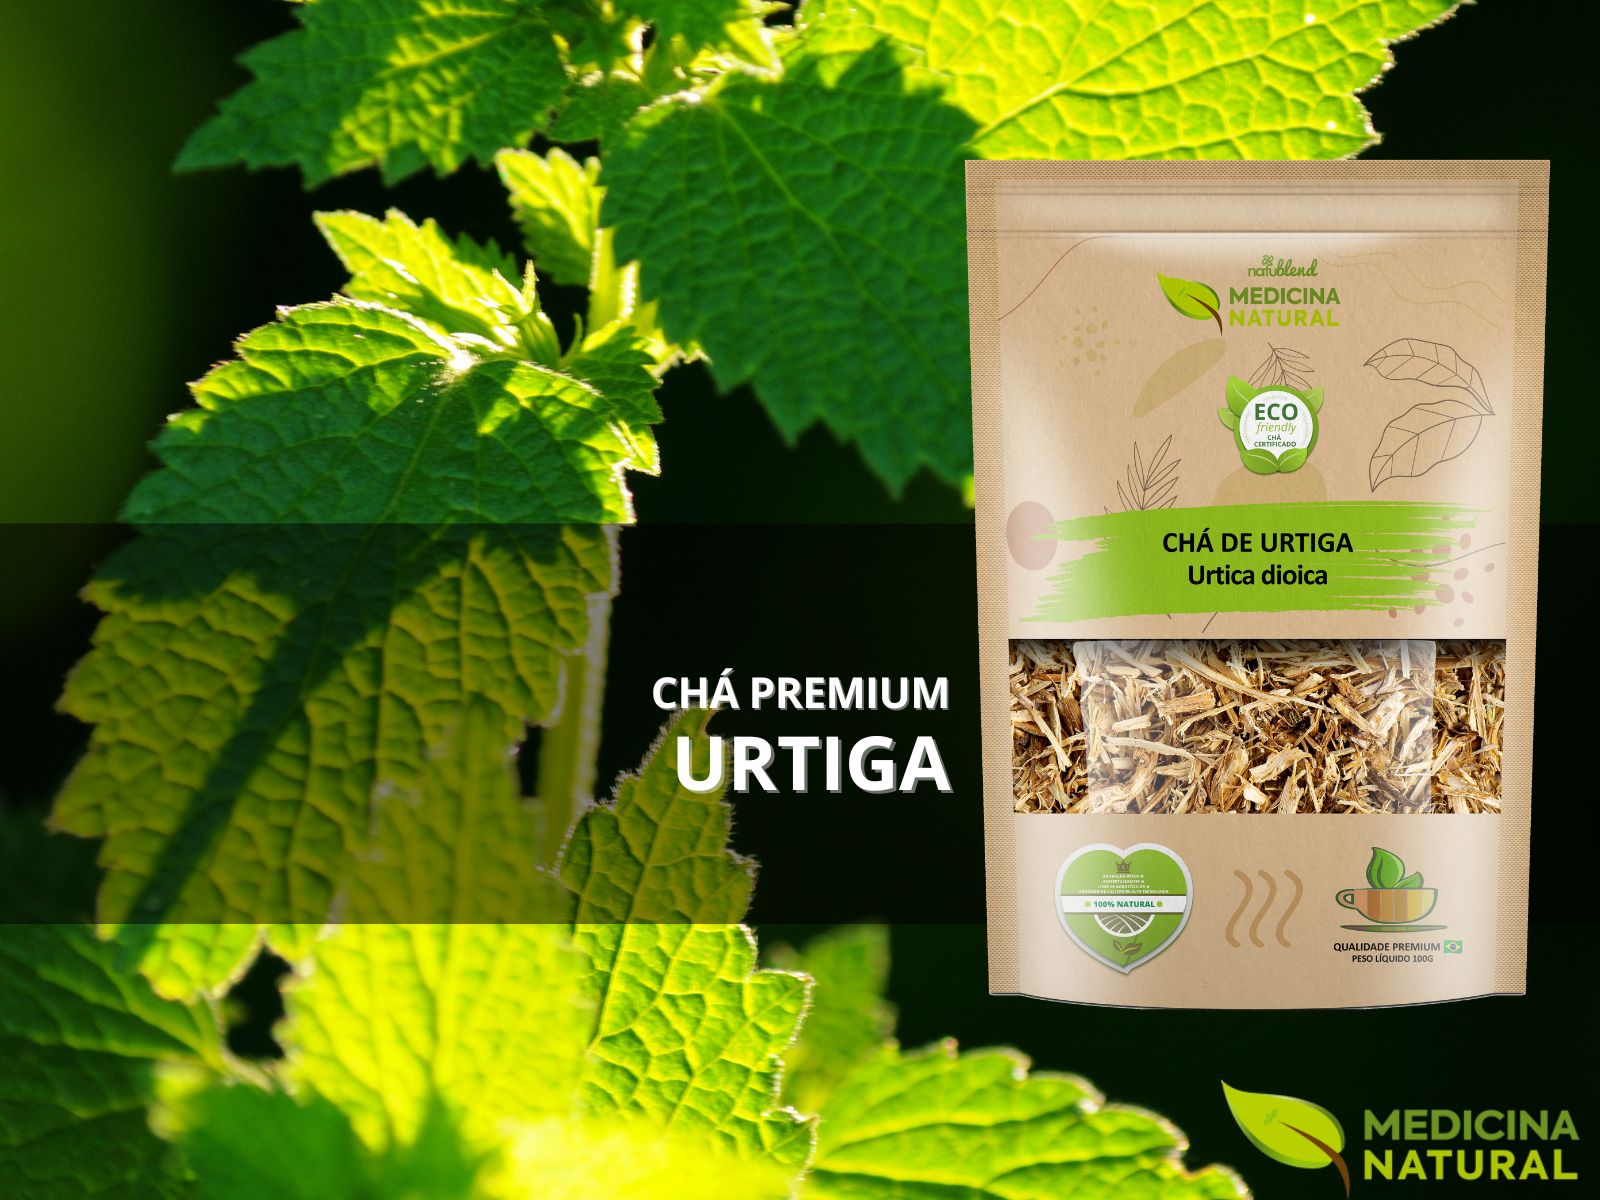 Chá de Urtiga – Urtica dioica – Premium